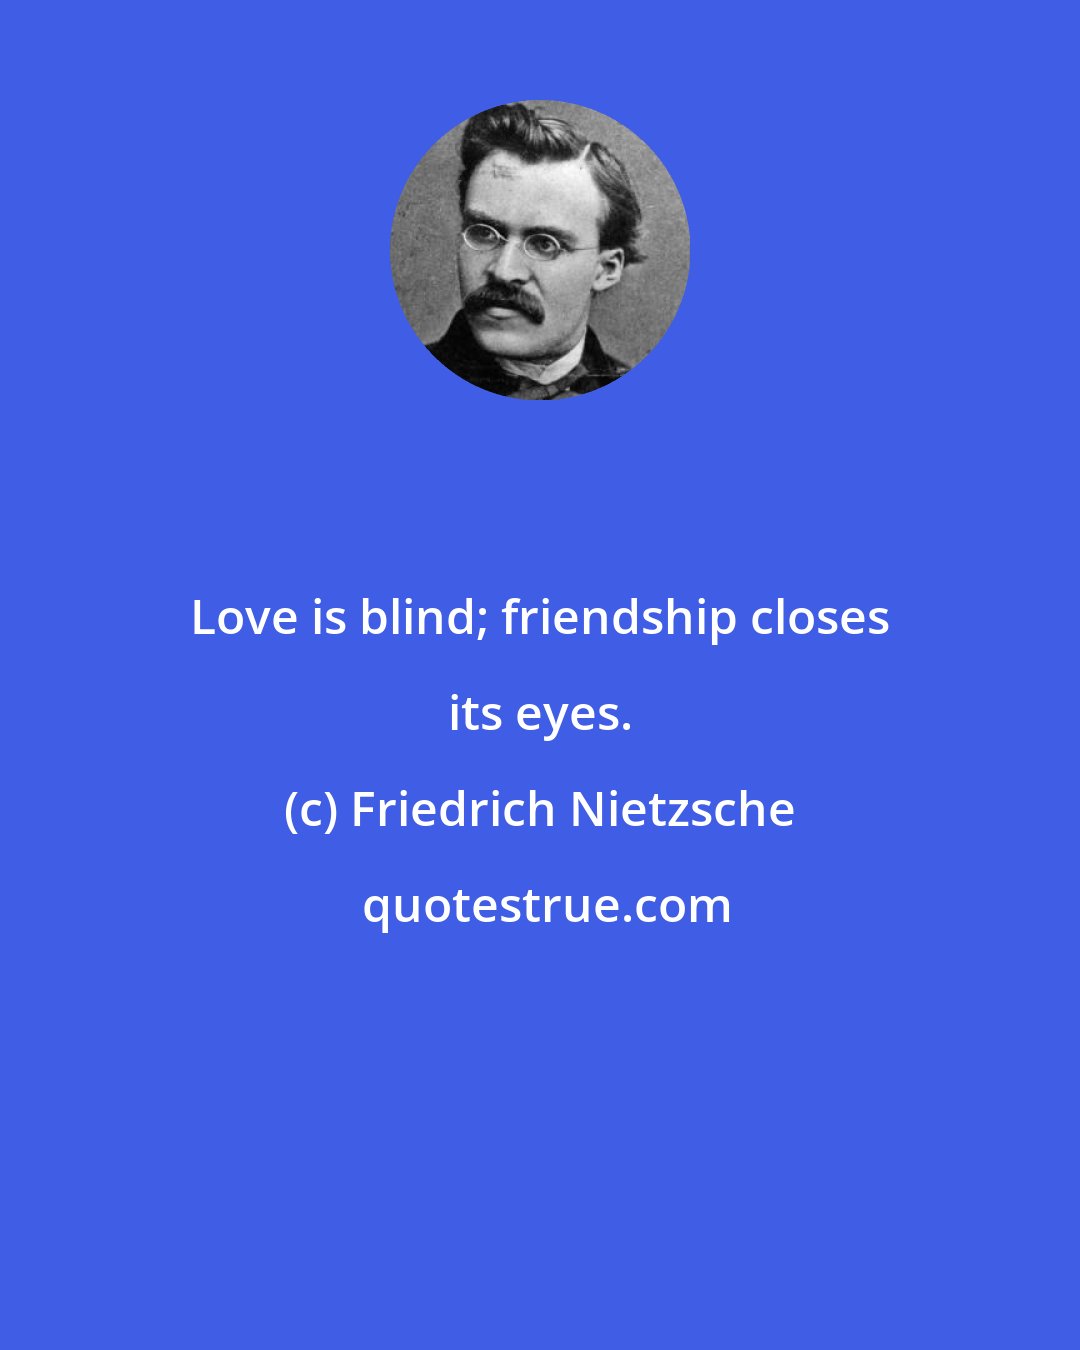 Friedrich Nietzsche: Love is blind; friendship closes its eyes.